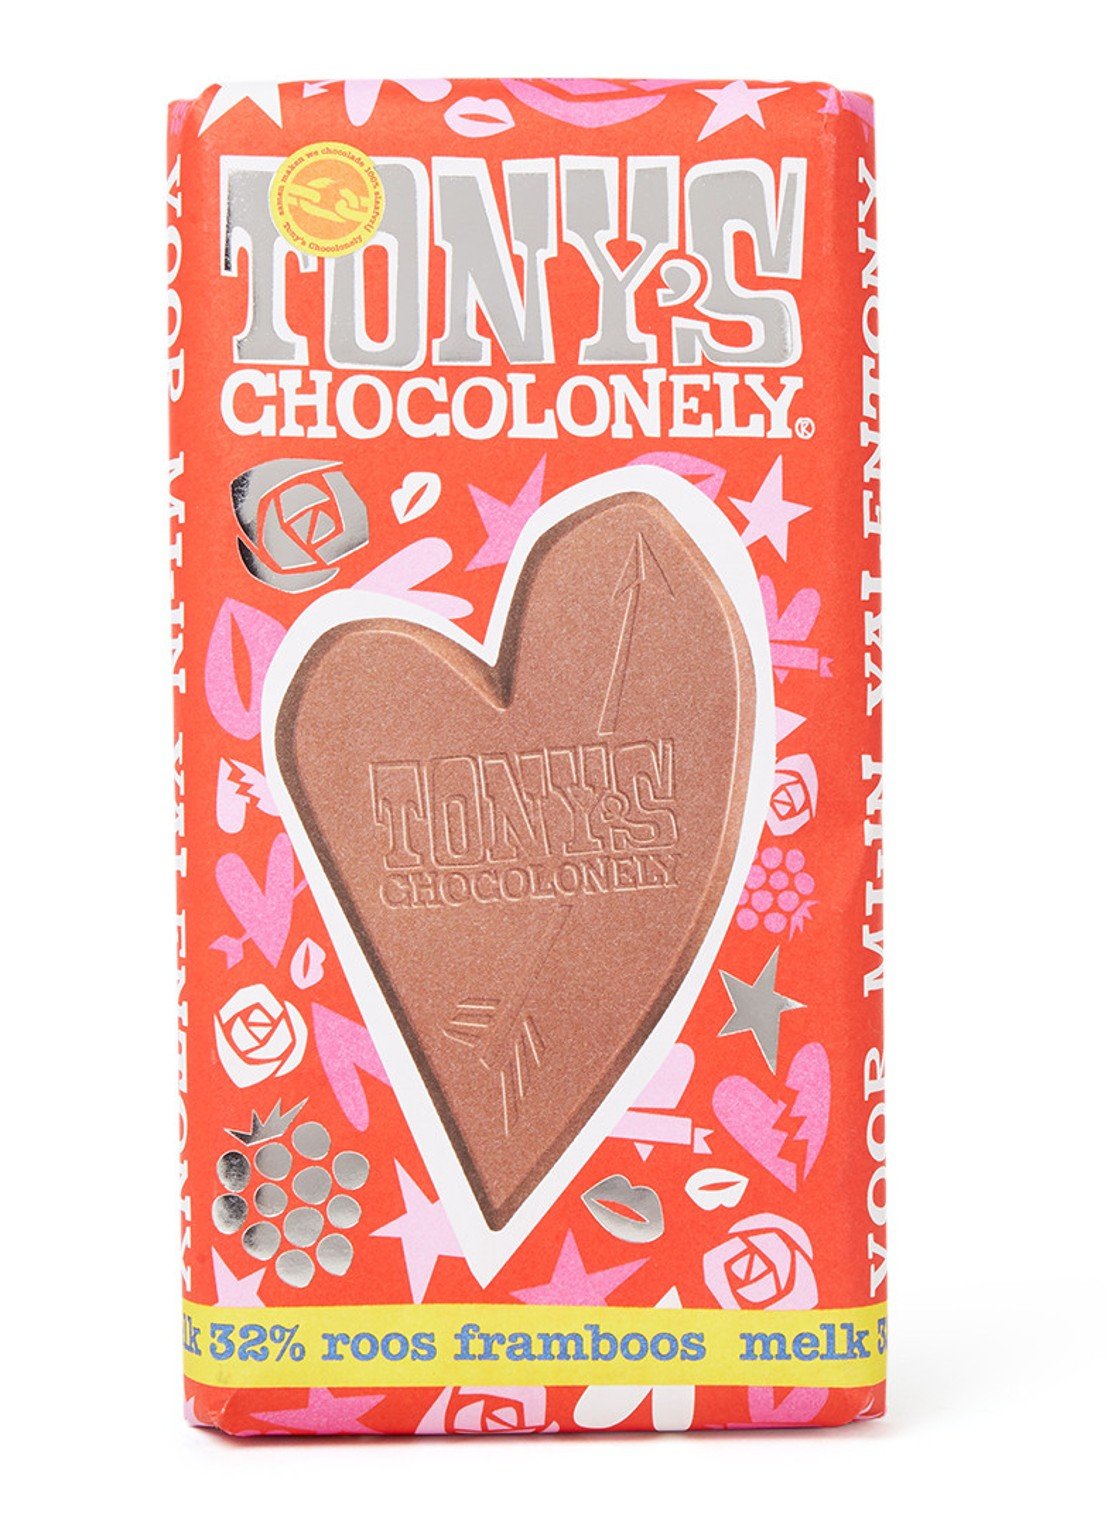 melk-framboos-tony-chocolonely-hart-valentijn